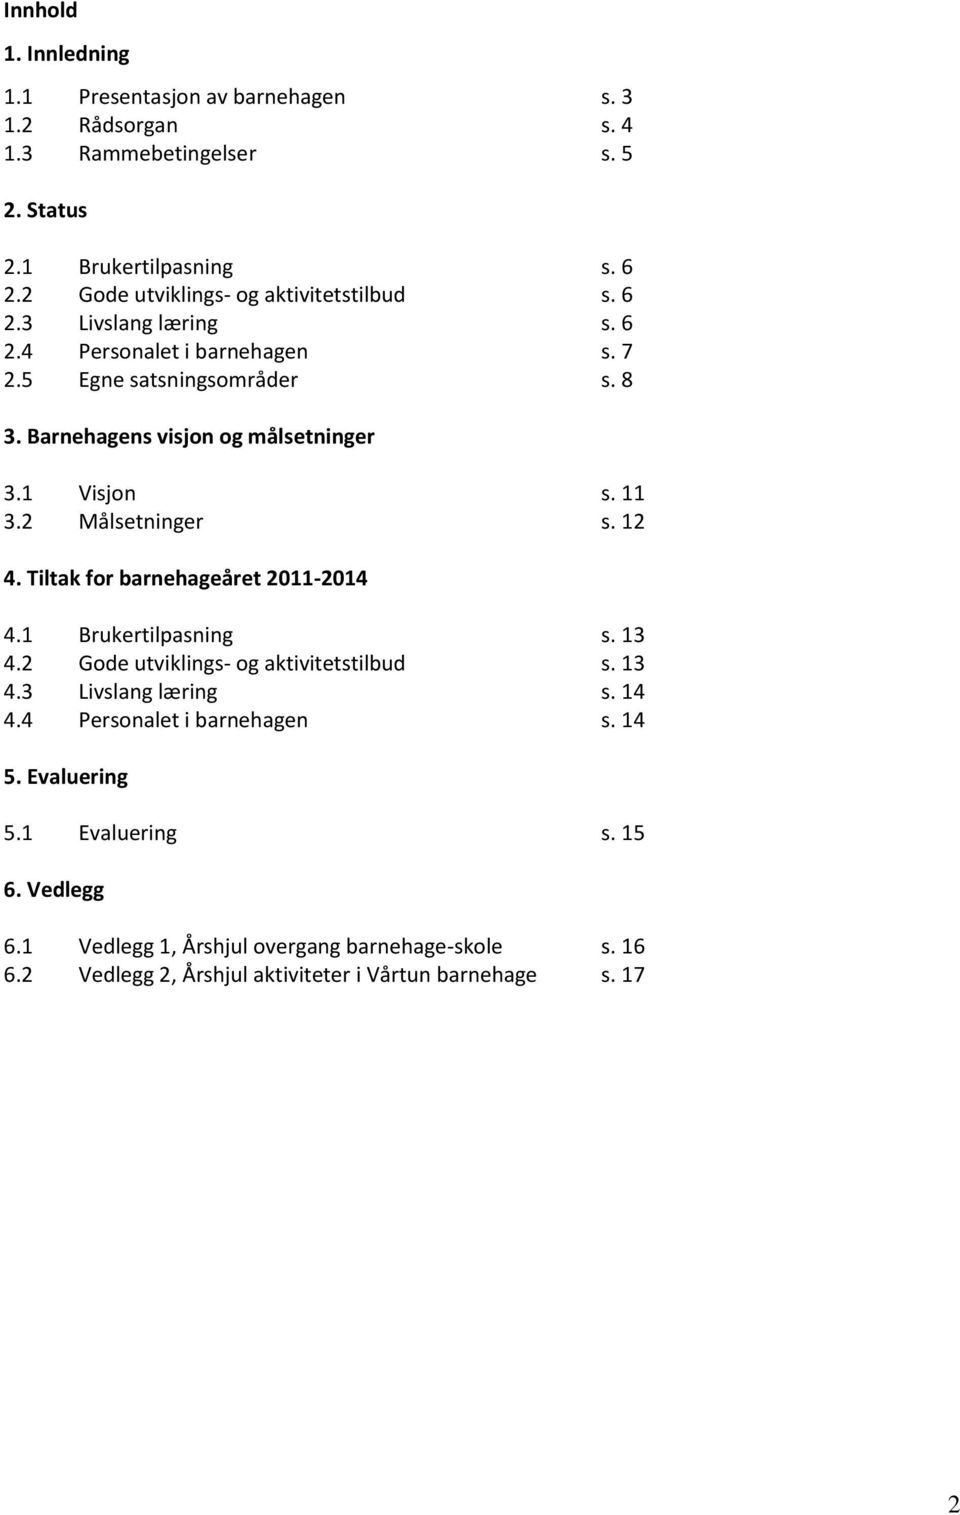 Barnehagens visjon og målsetninger 3.1 Visjon s. 11 3.2 Målsetninger s. 12 4. Tiltak for barnehageåret 2011-2014 4.1 Brukertilpasning s. 13 4.